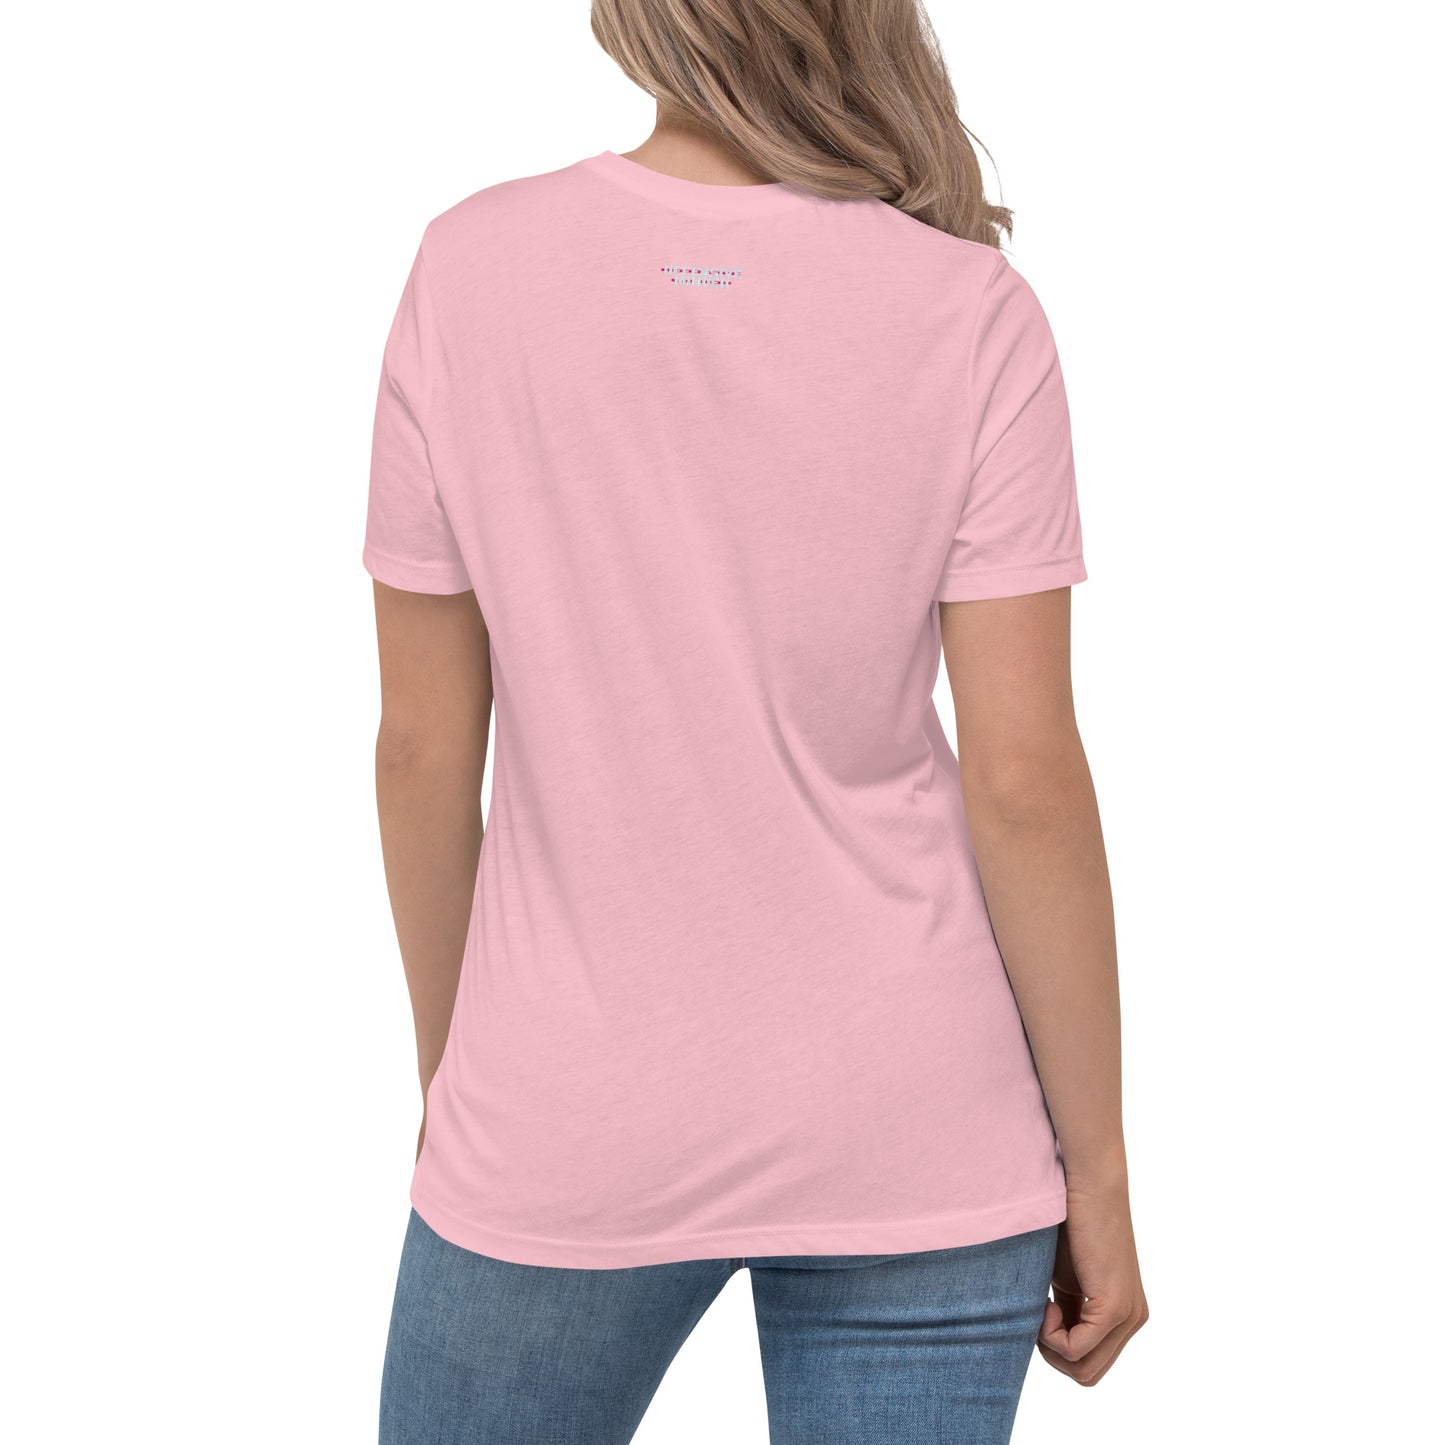 OM Pink Women's Relaxed T-Shirt